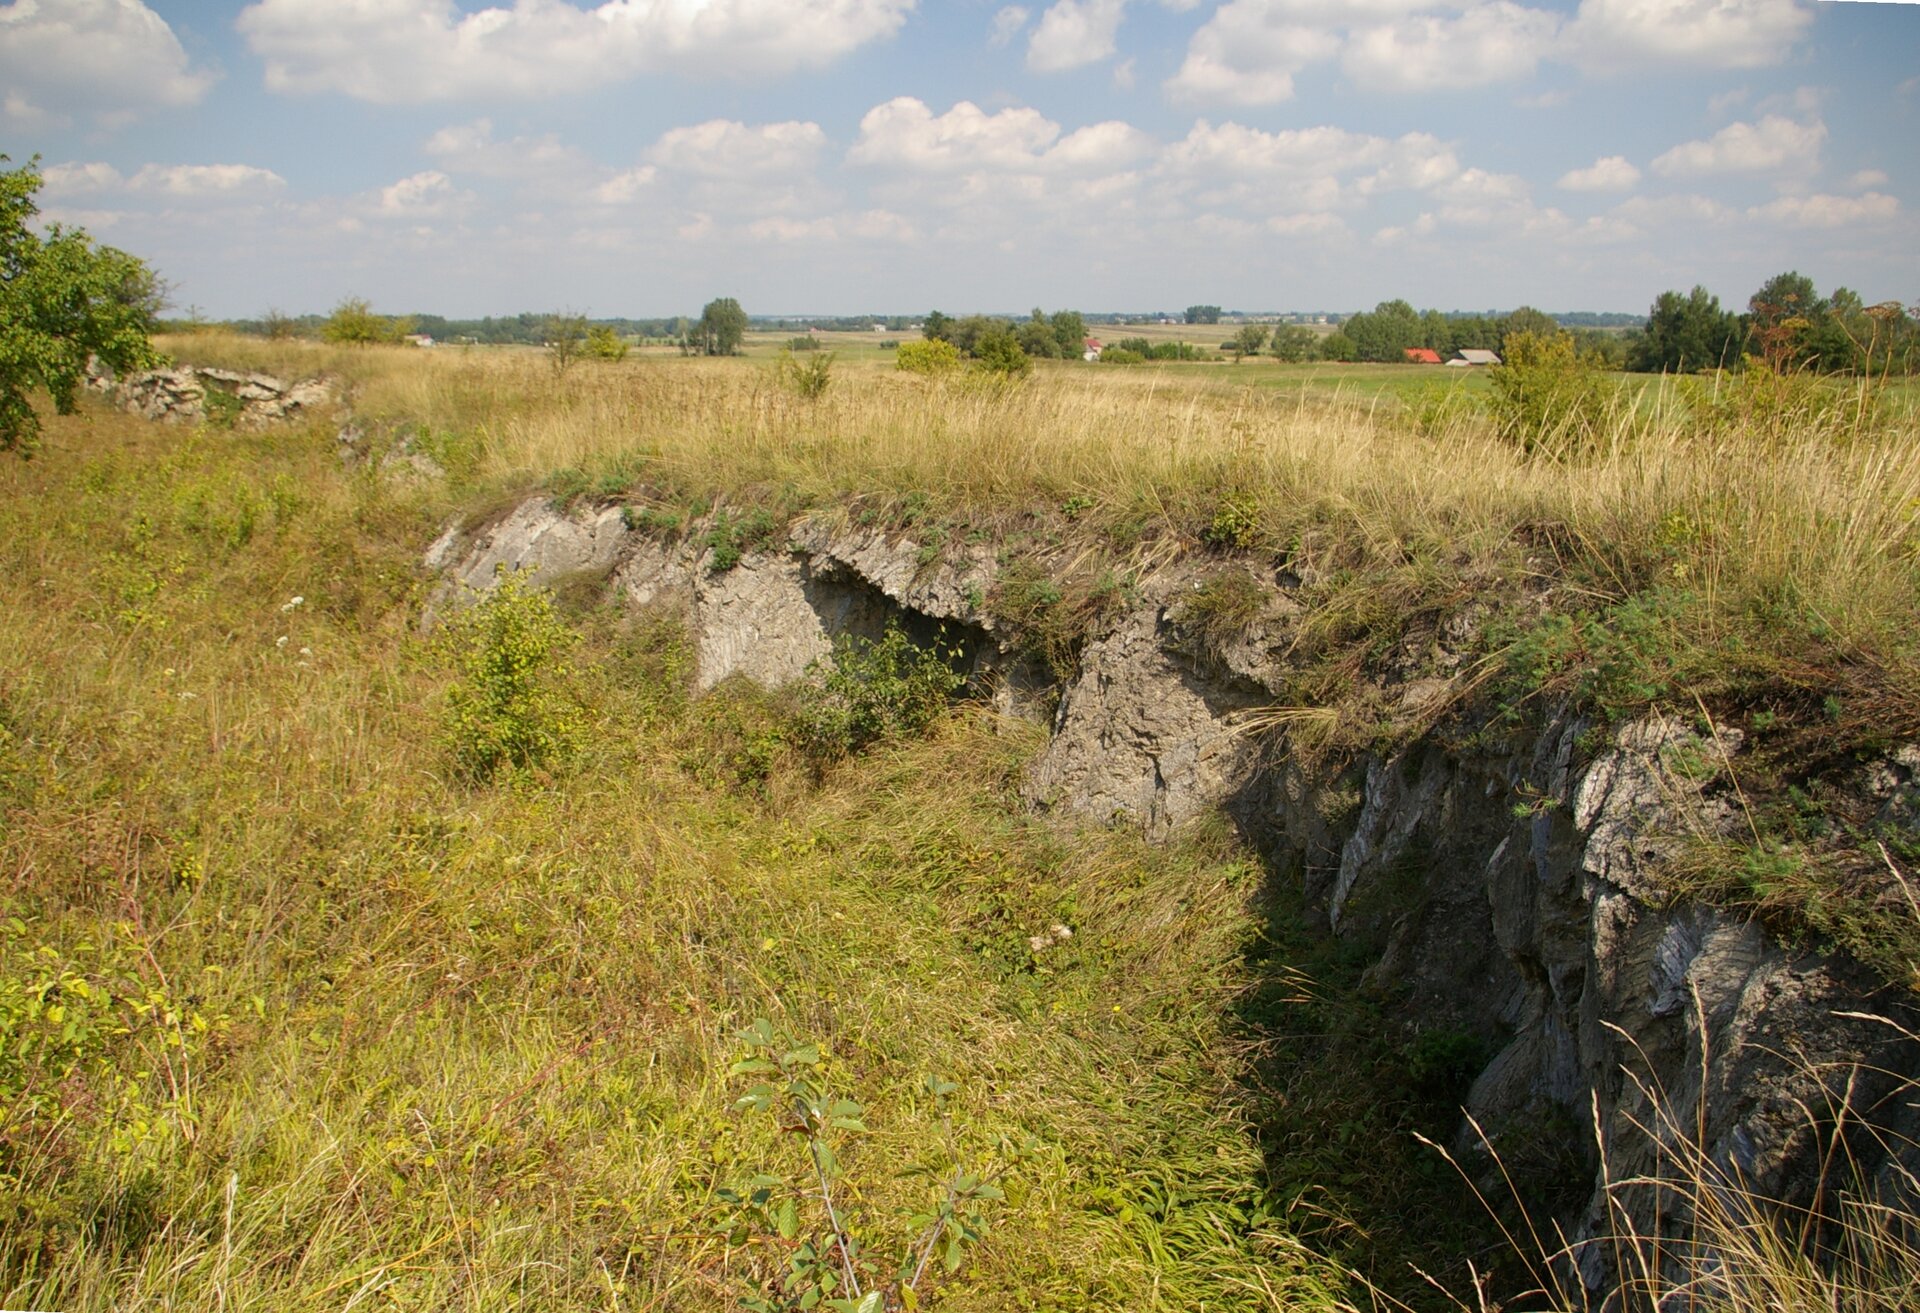 Zdjęcie przedstawia teren porośnięty trawą. W jednym miejscu jest uskok, który tworzą niewysokie, strome skały. Skały mają nieregularną powierzchnię.  